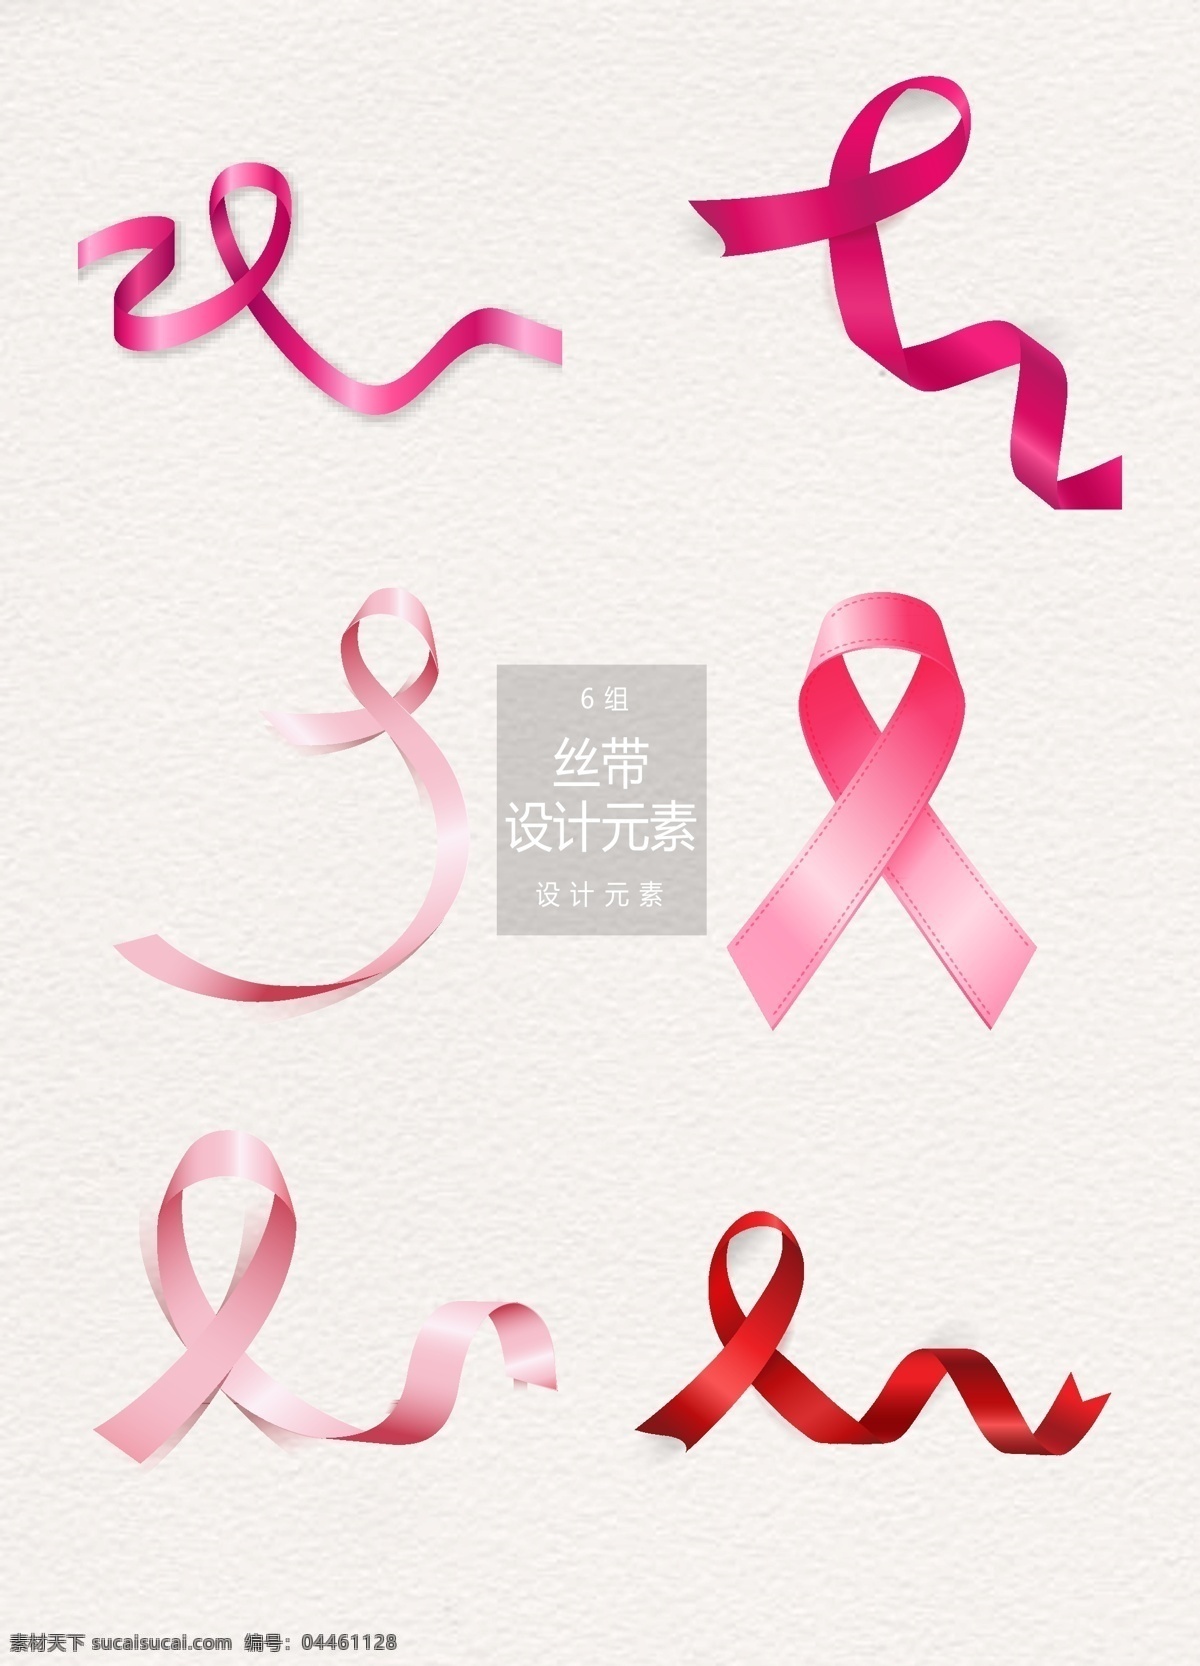 世界 癌症 日 丝带 元素 设计元素 世界癌症日 粉色丝带 节日元素 癌症日 粉色